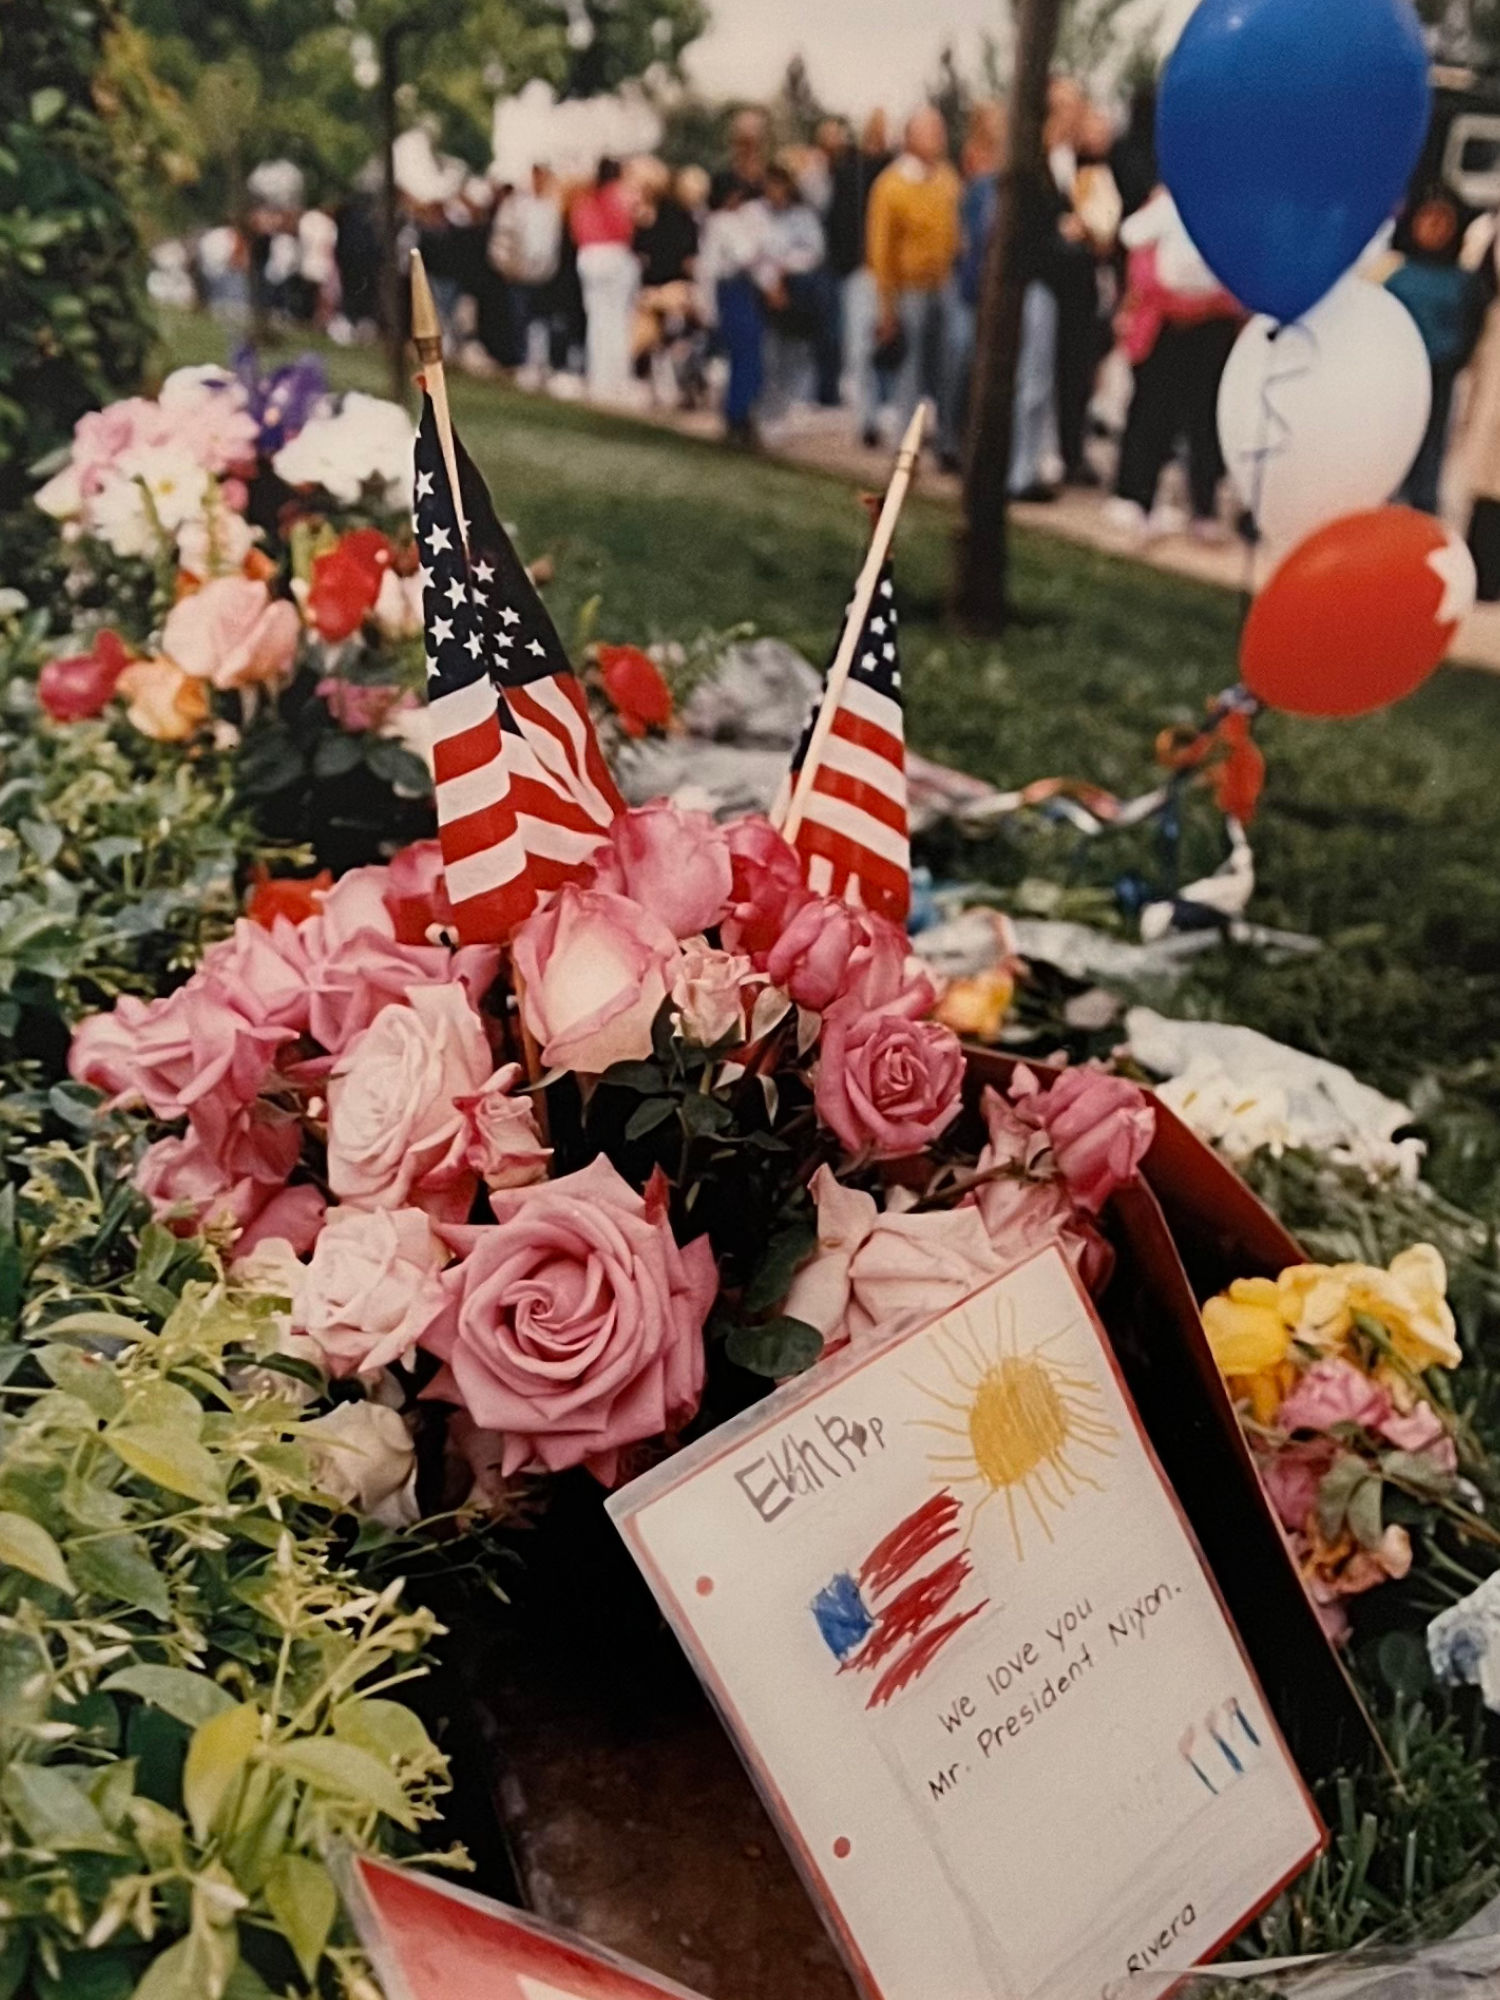 Nixon Funeral Flowers